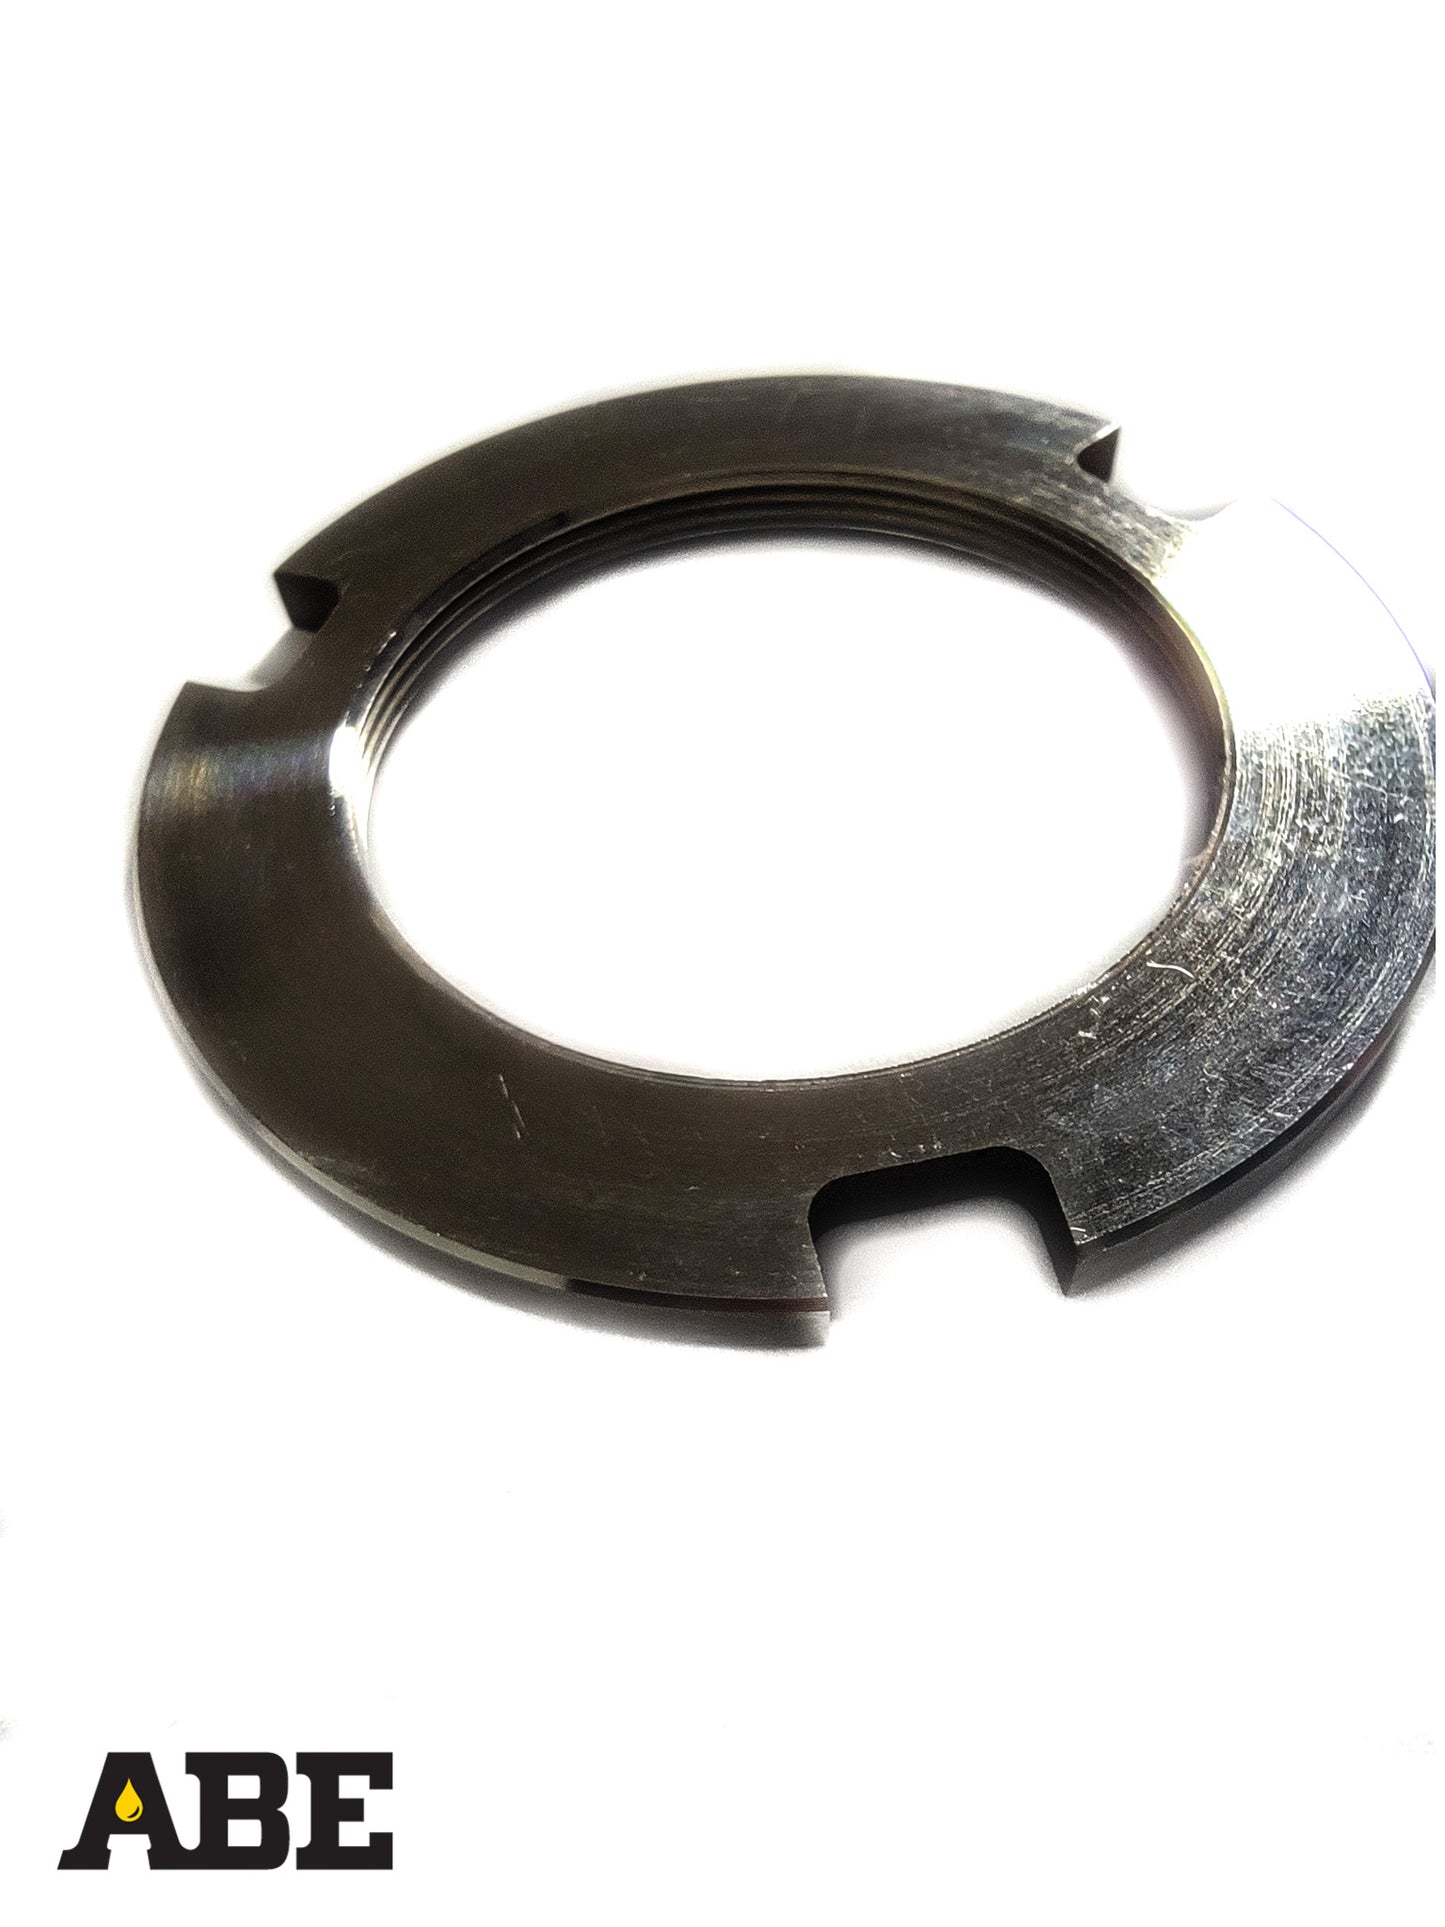 Keg Washer Pedestal Lock Ring